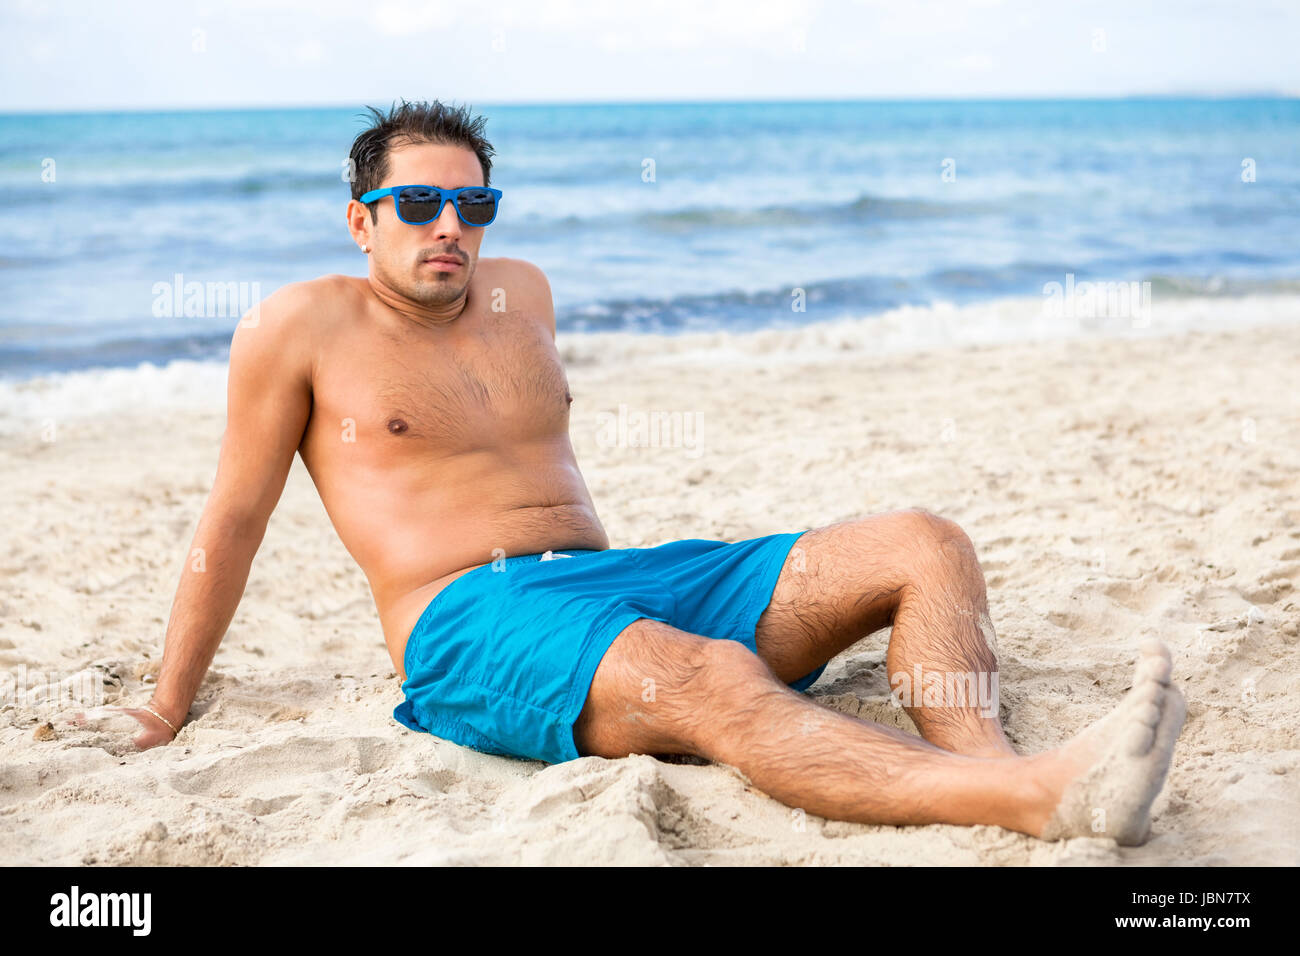 Junger attraktiver gut aussehender Mann mit Badehose im Sommer Urlaub am  Strand im Sand Stock Photo - Alamy